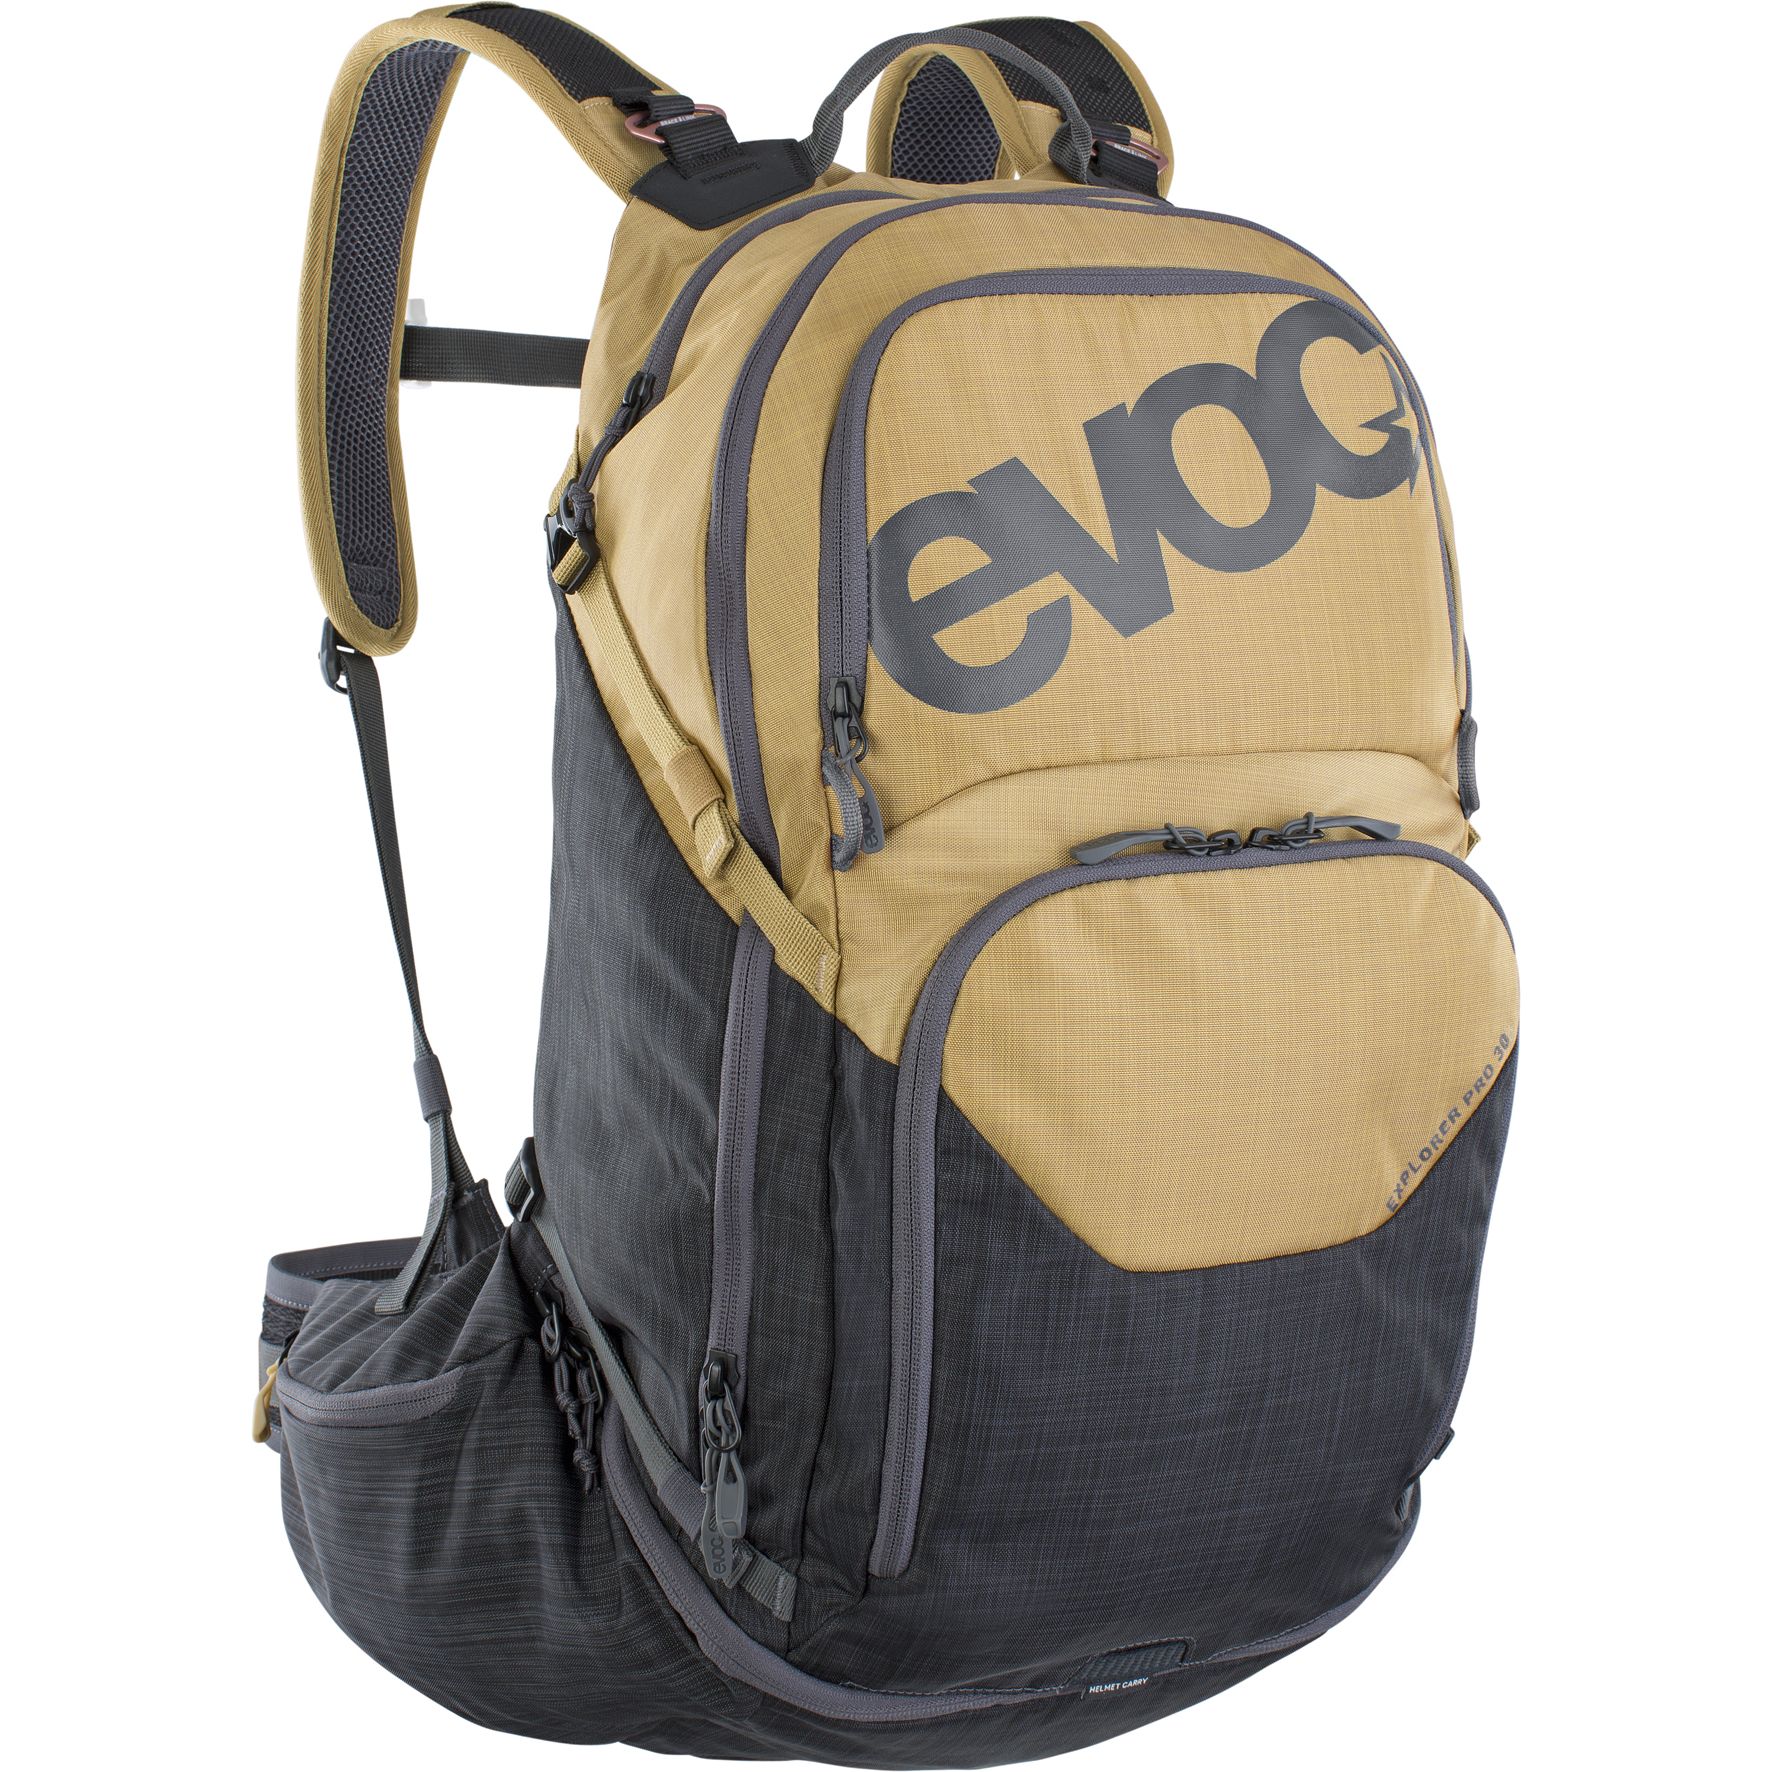 Picture of EVOC Explorer Pro Backpack - 30 L - Gold / Carbon Grey